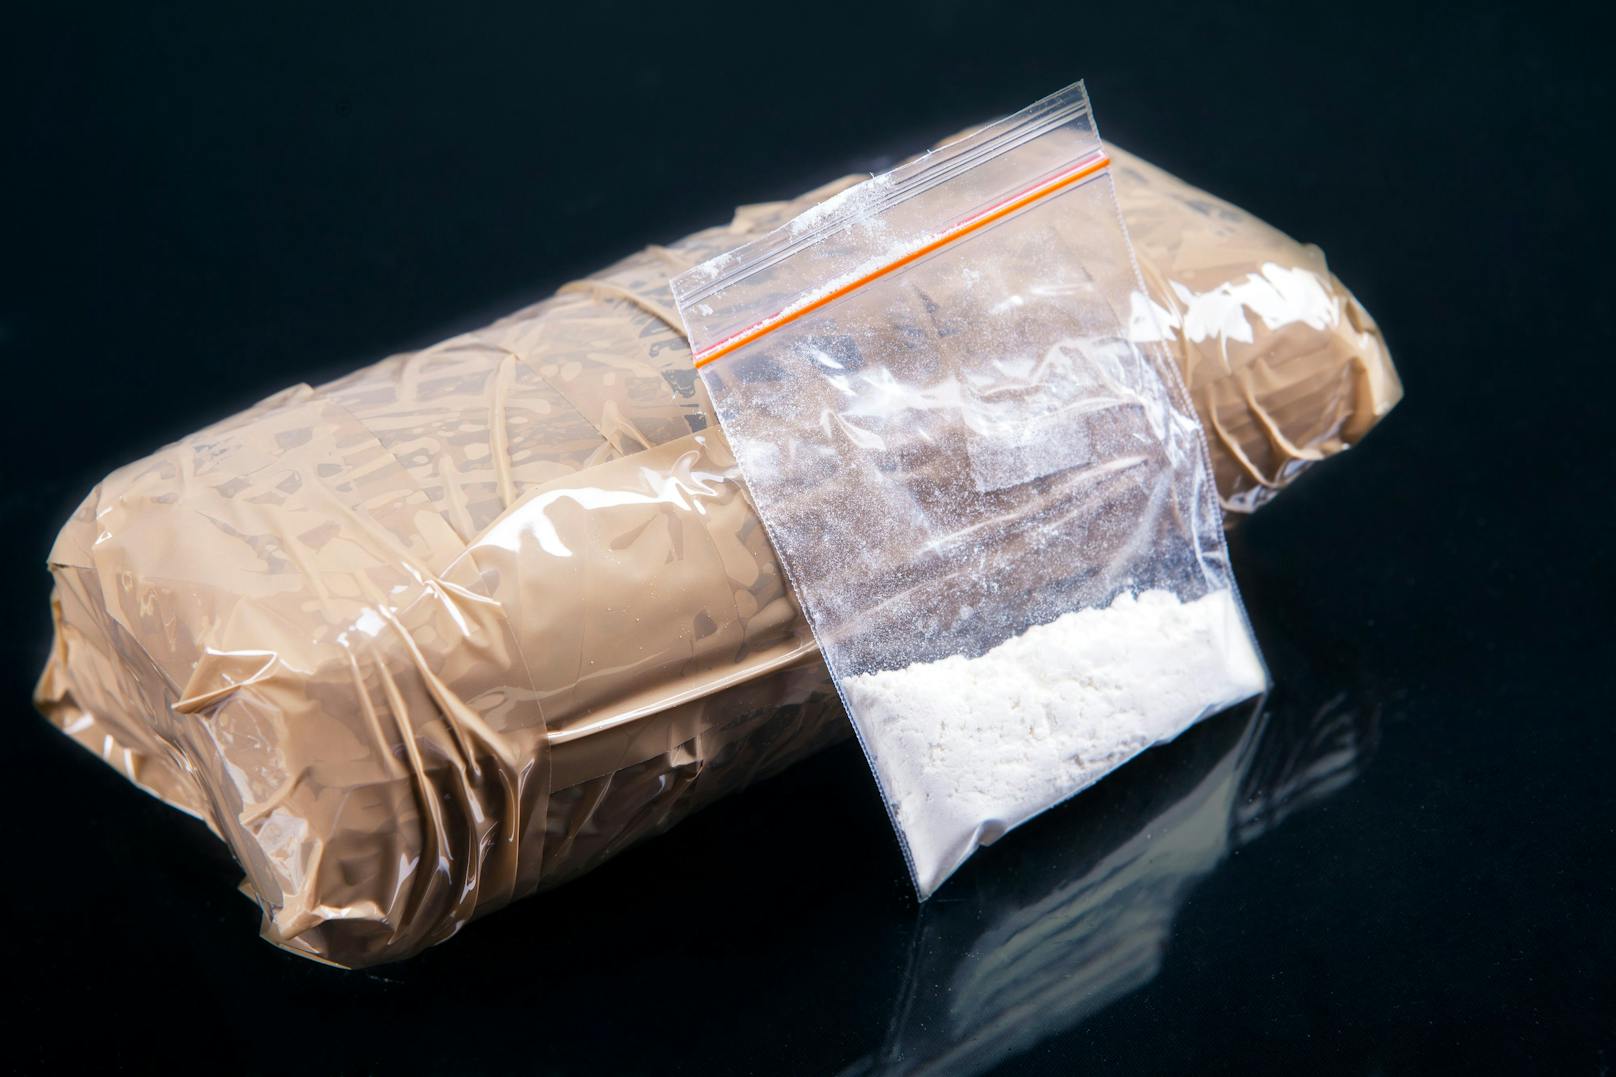 Am Ostersonntag fanden Polizisten in Spanien und Ecuador über 5 Tonnen Kokain. (Symbolbild)